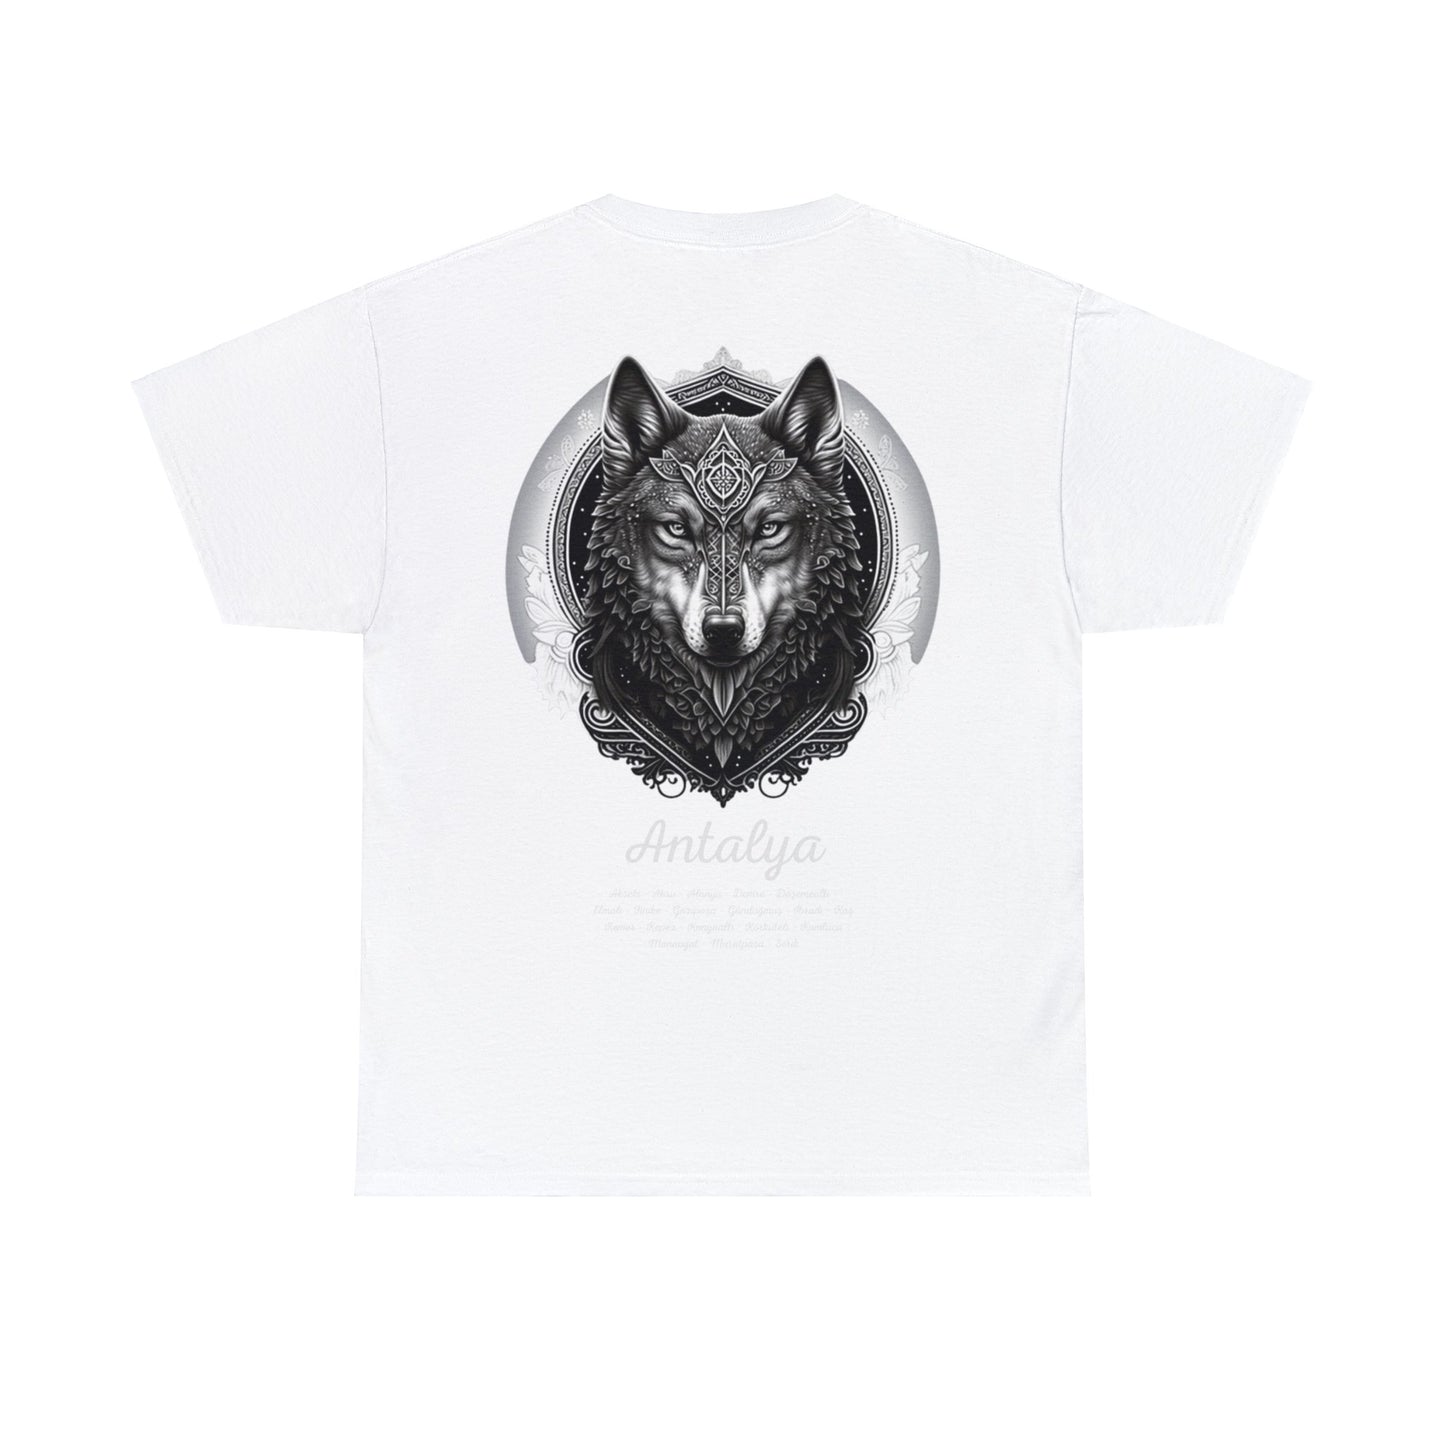 Kurt - 07 Antalya - T-Shirt - Back Print - Black/White